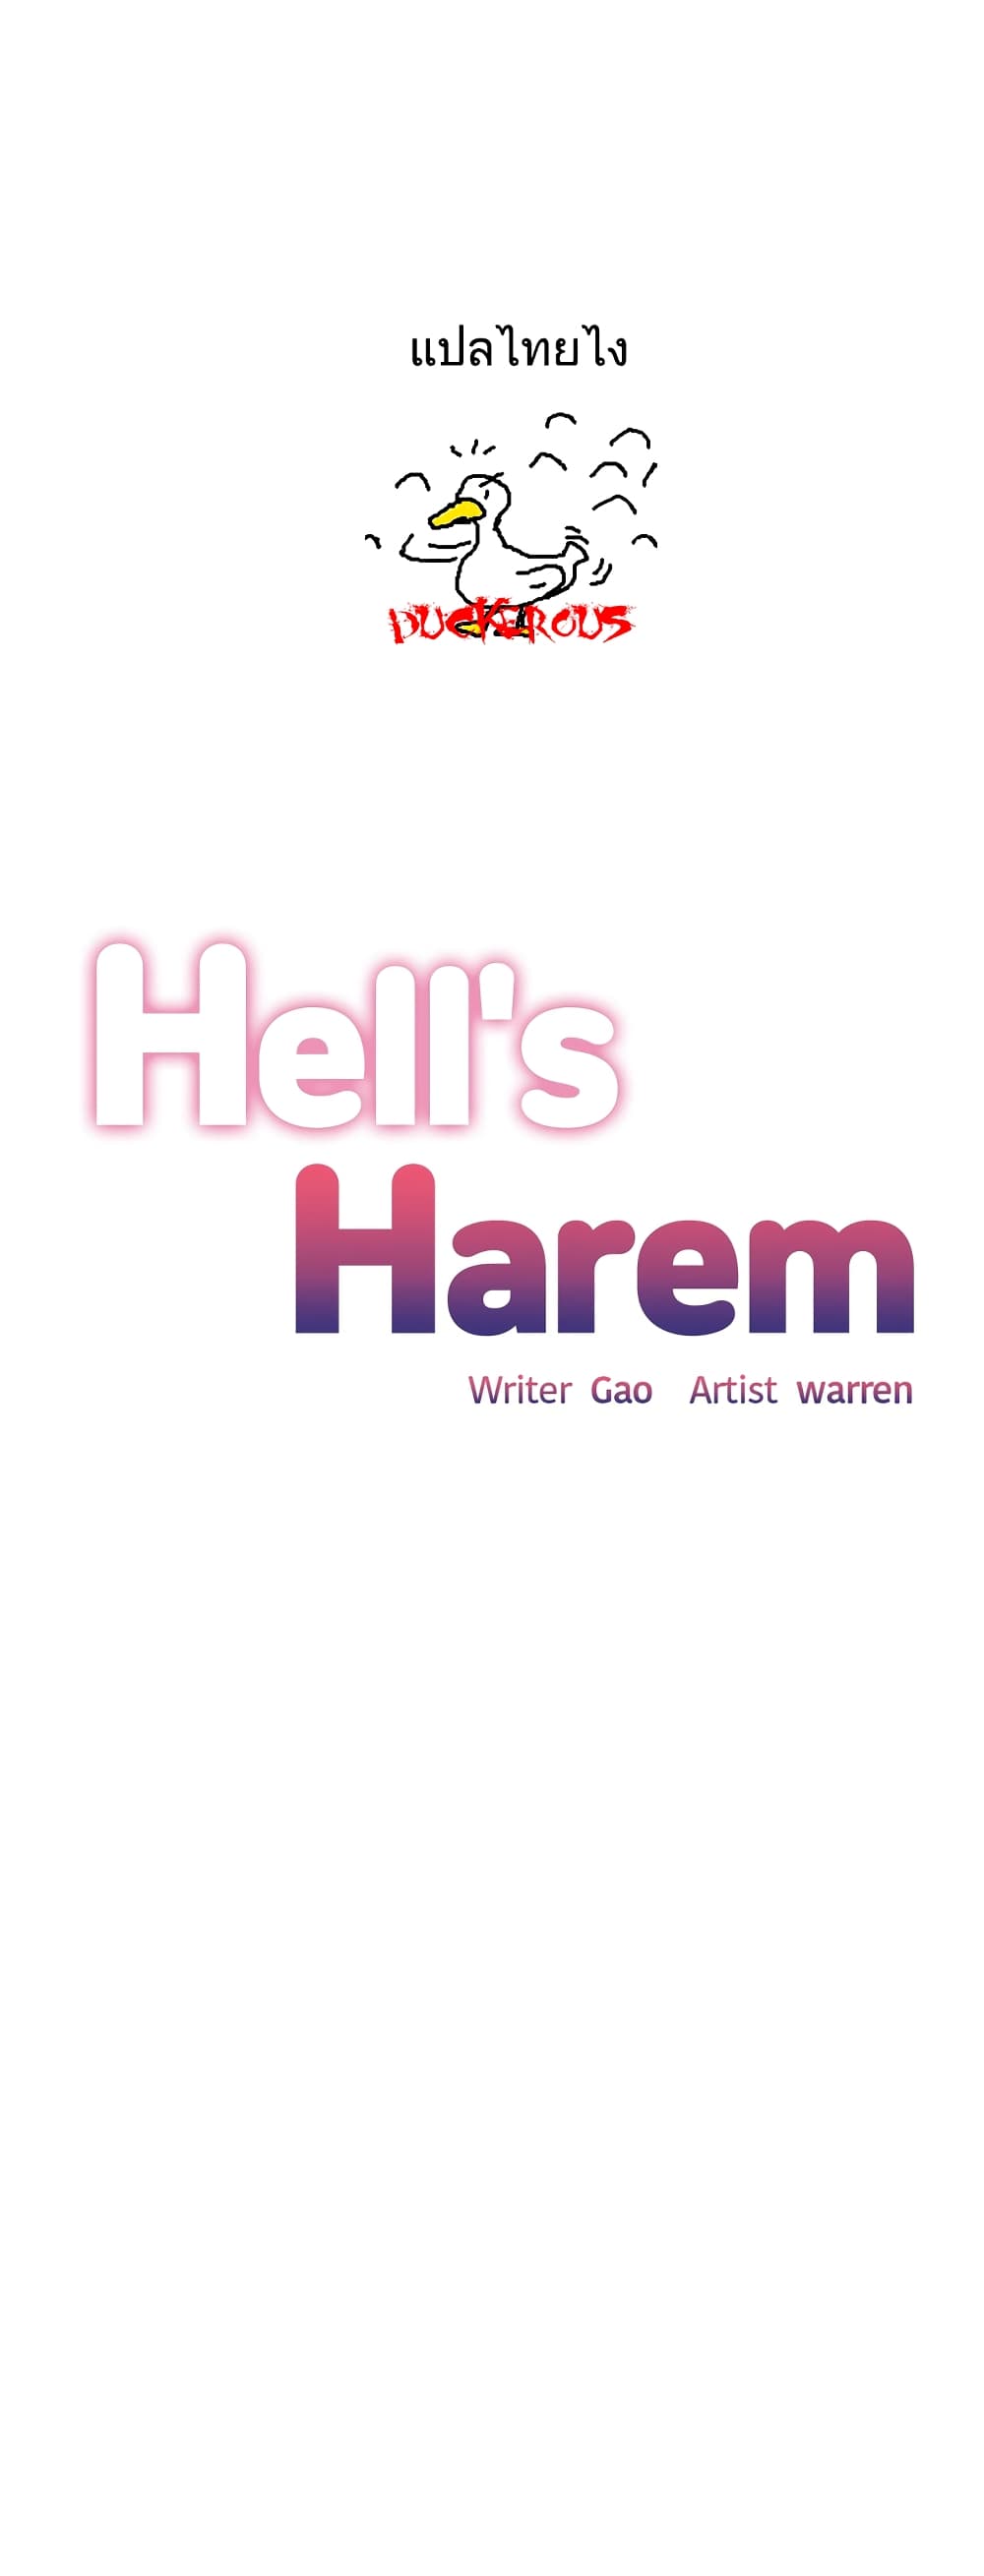 Hell's Harem 34 (1)